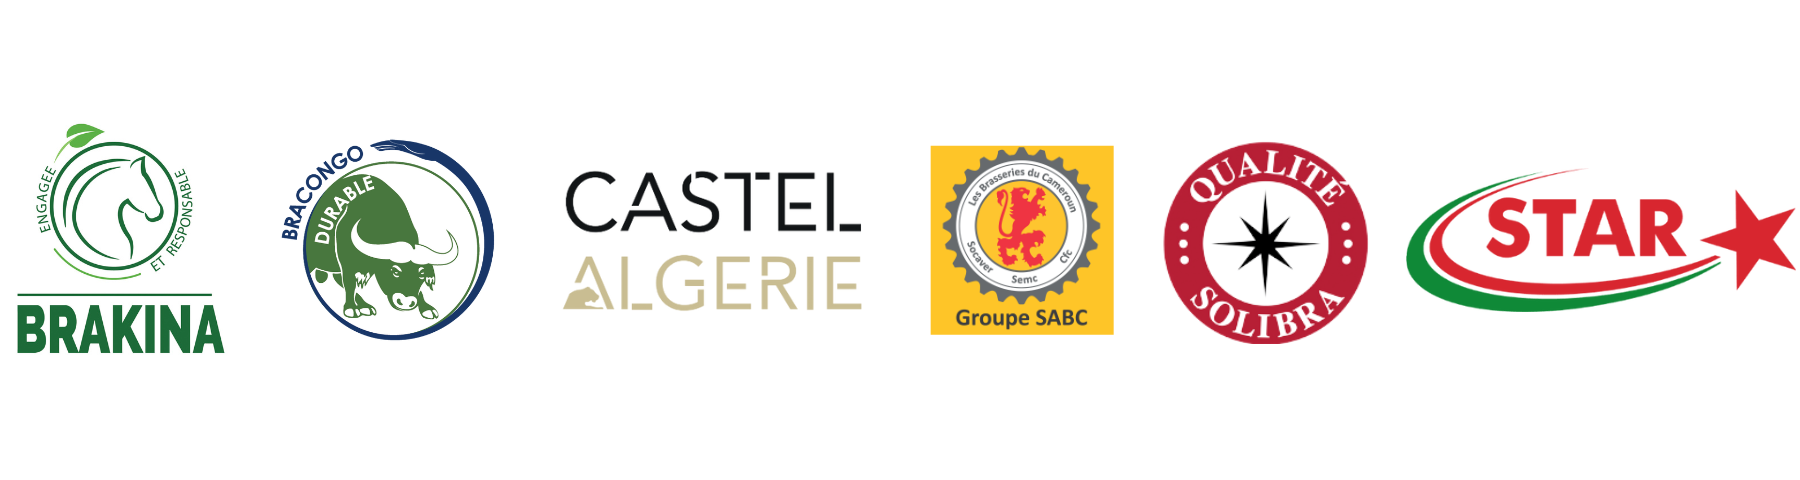 Fonds Pierre Castel - Logos filiales Castel partenaires